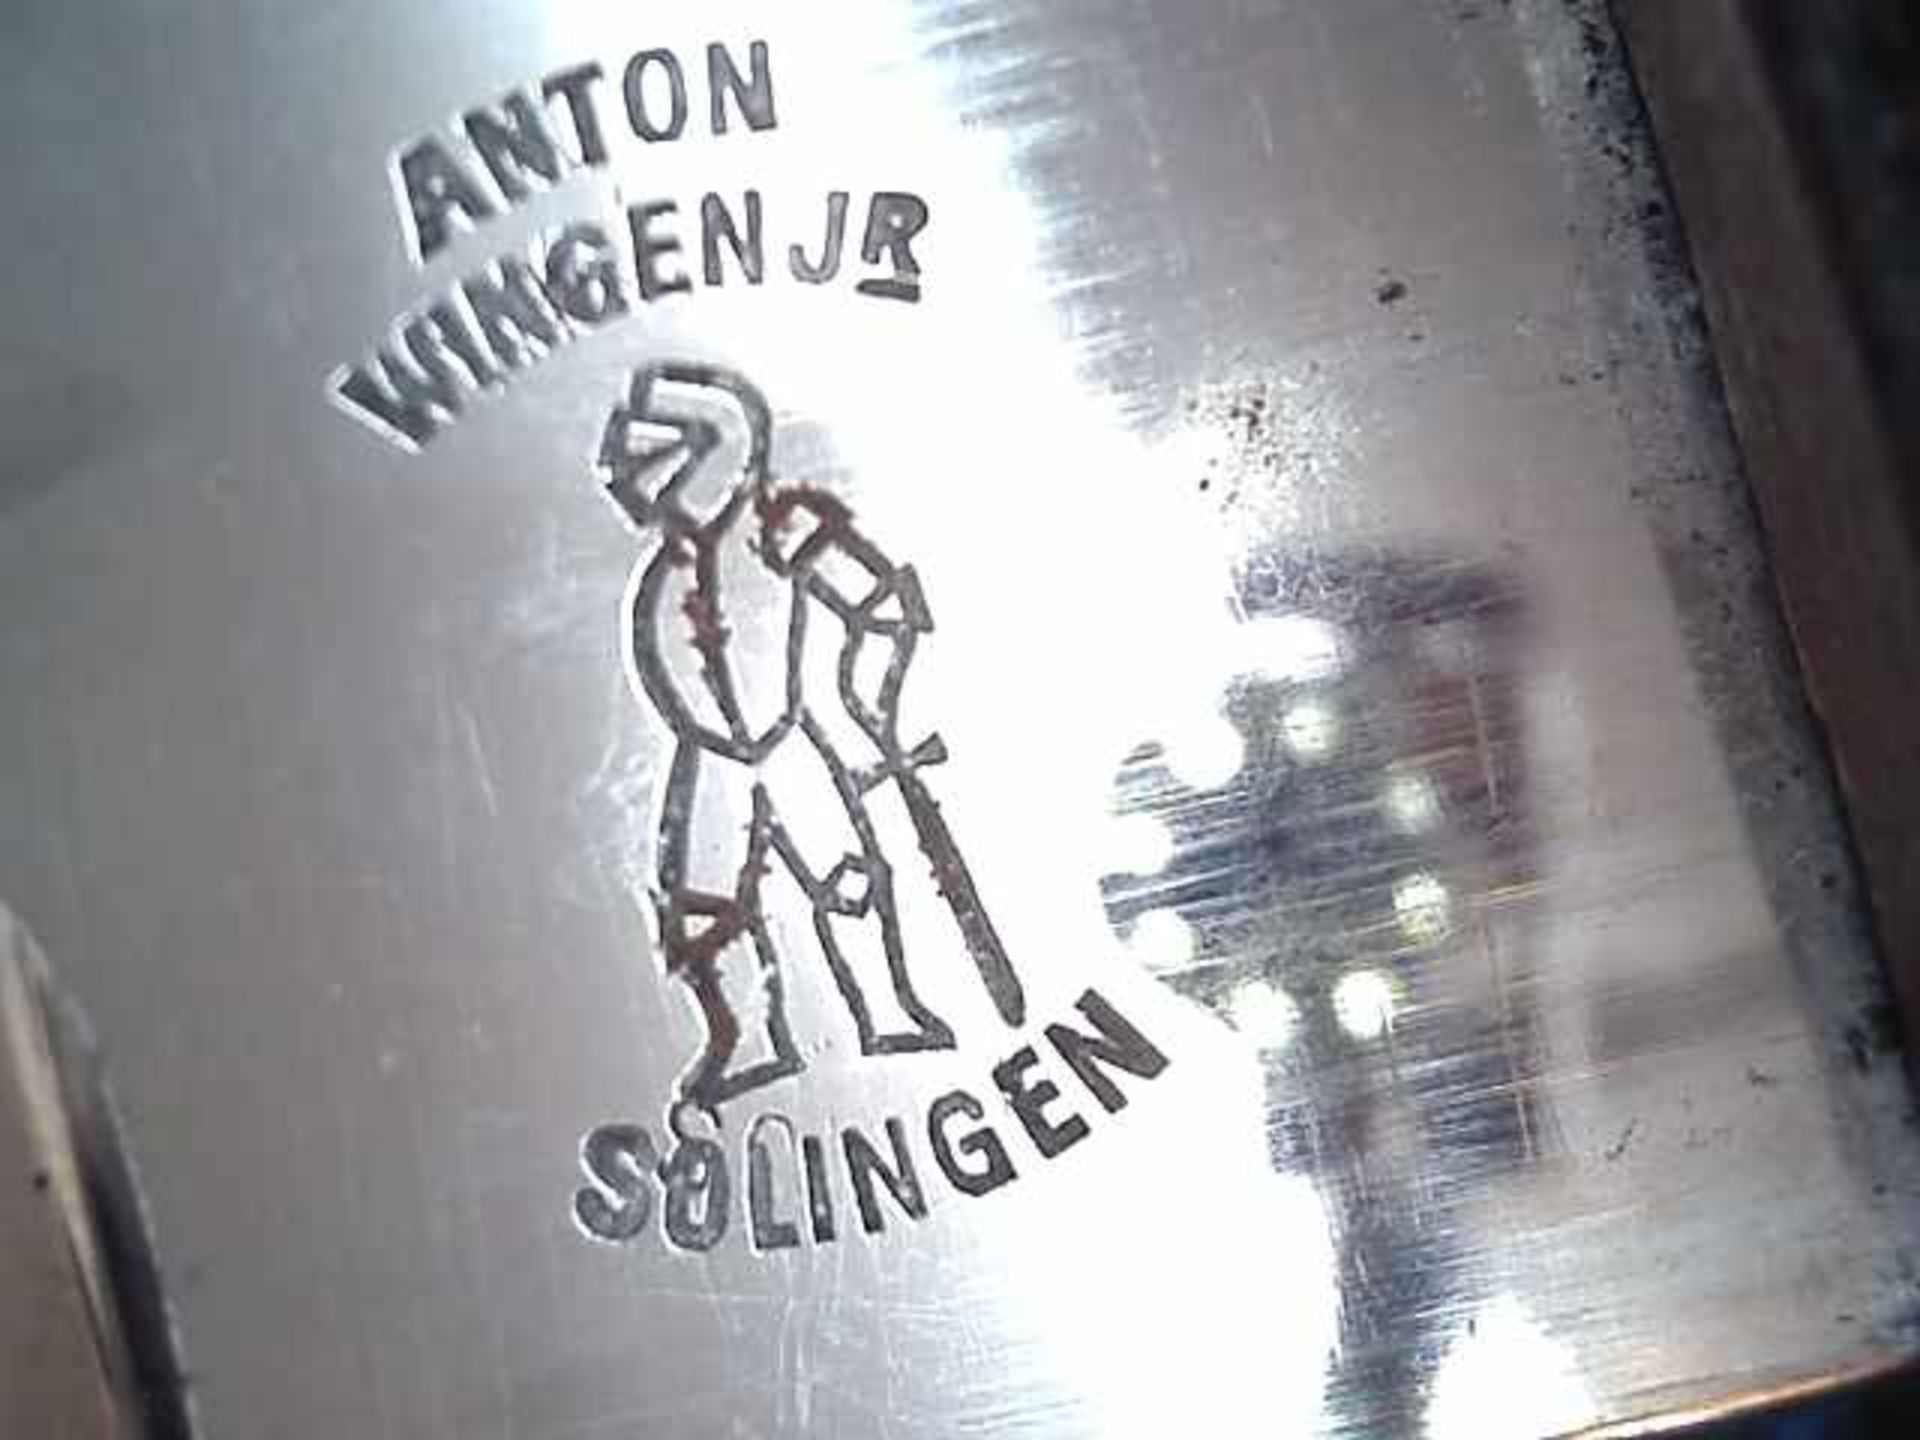 Extra Seitengewehrfür Gebirgsjäger, II. WK, Klingenhersteller Anton Wingen Jr. Solingen, - Image 2 of 2